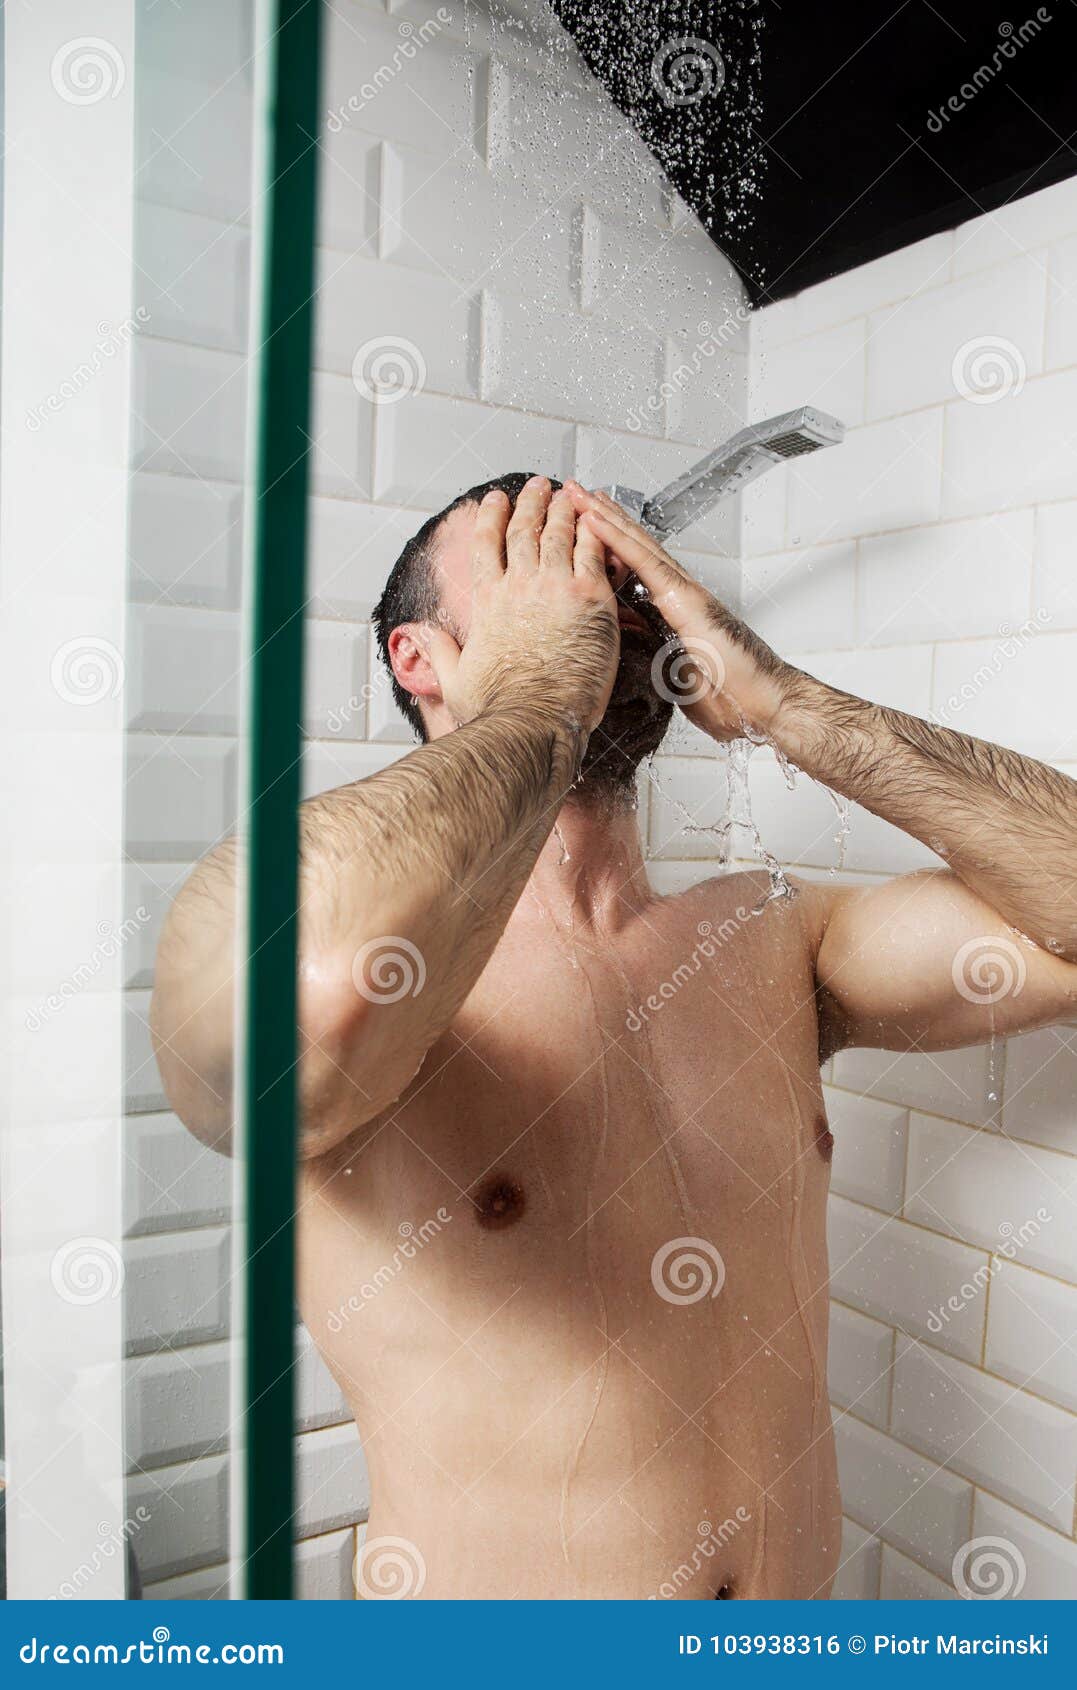 Men showering together naked.